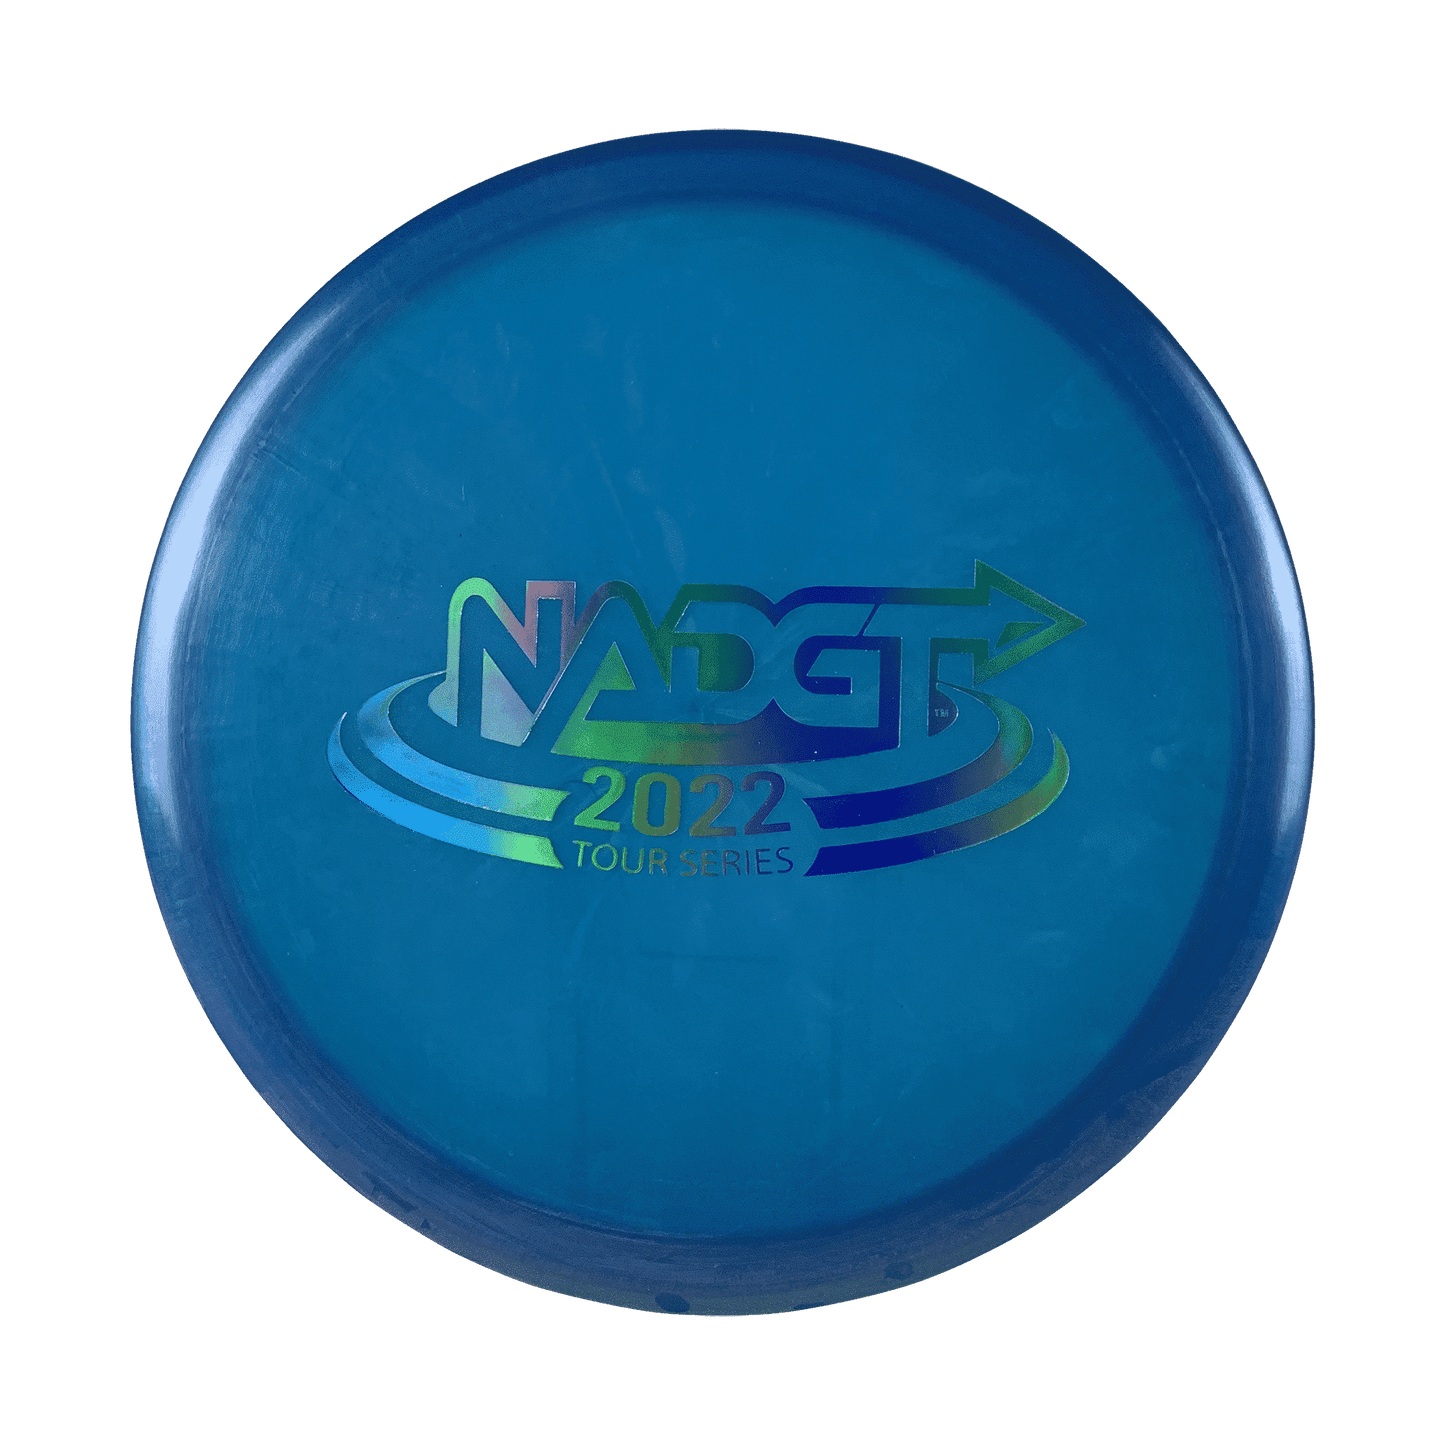 Z Buzzz - NADGT Stamp Disc Discraft blue 177 